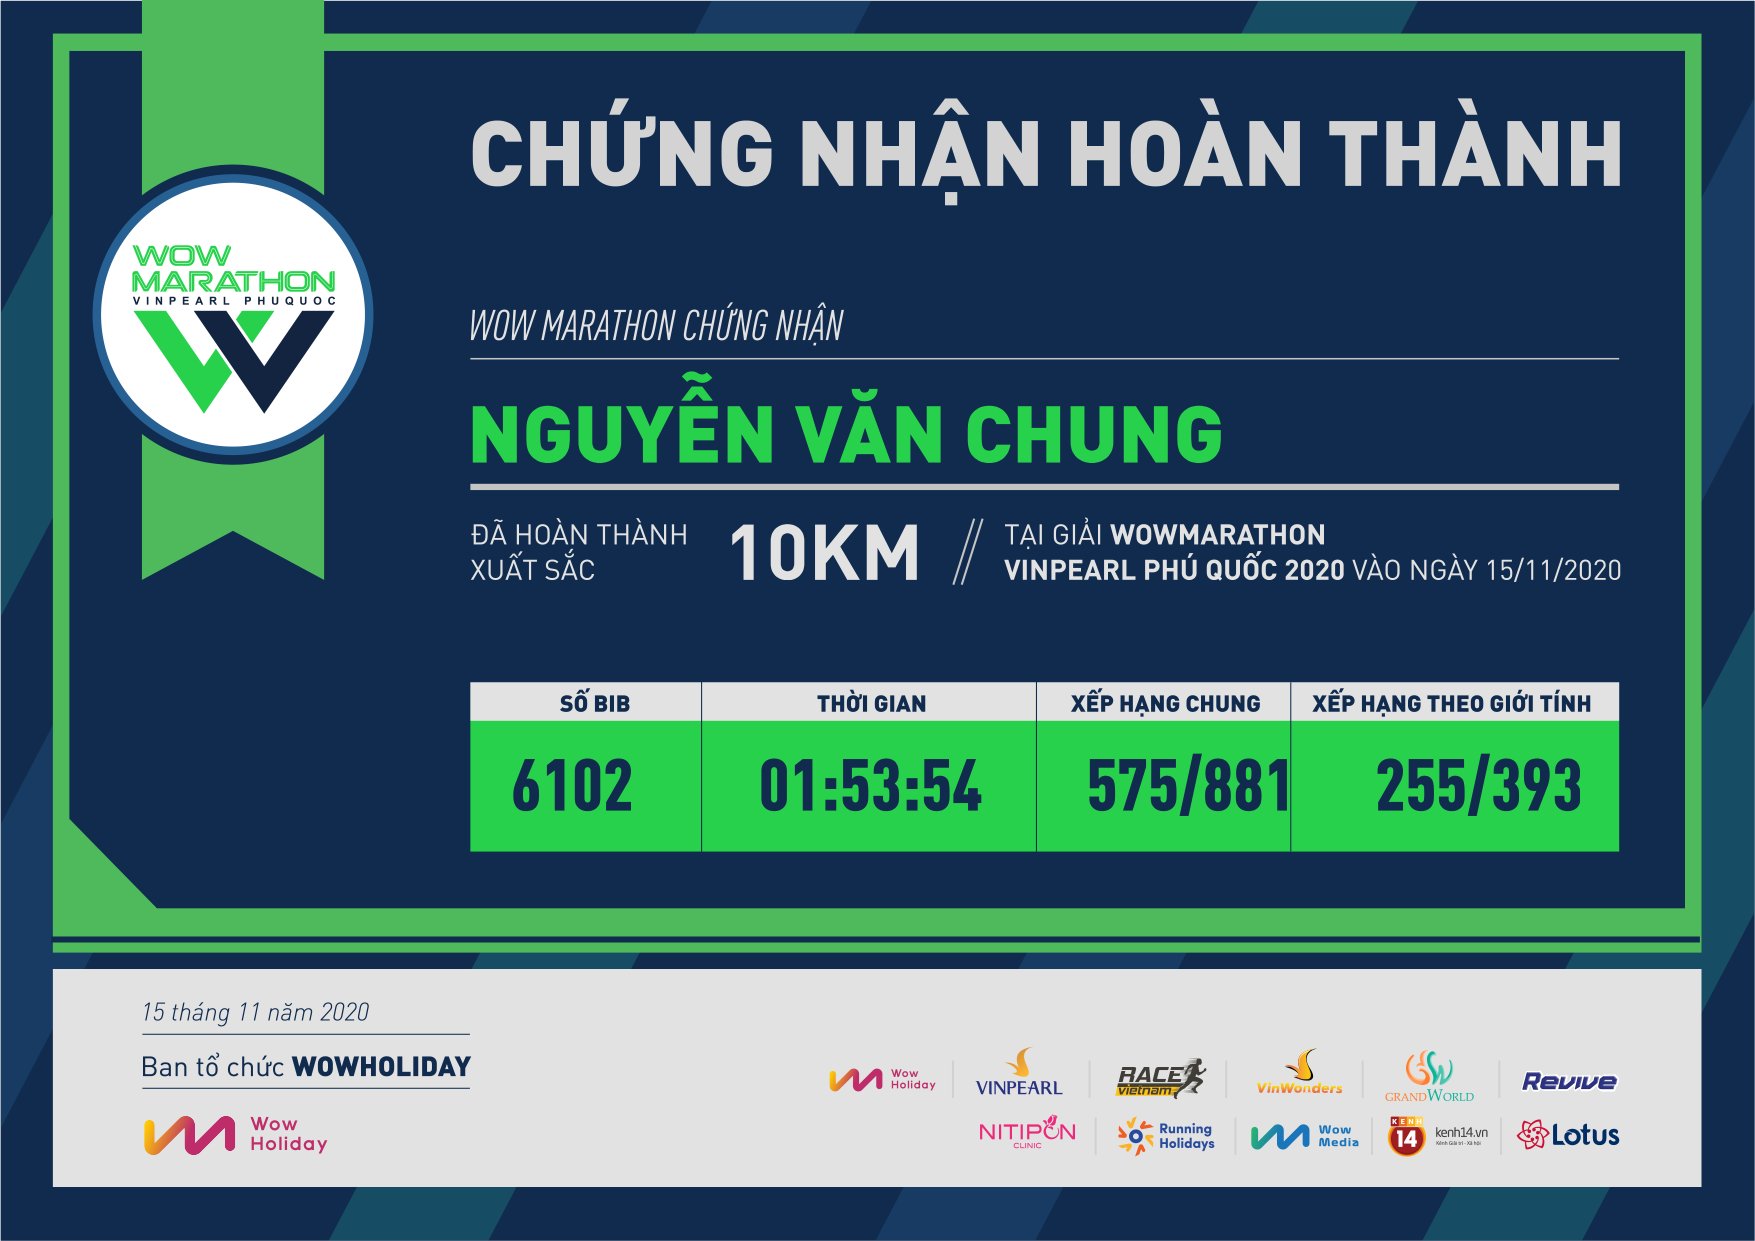 6102 - Nguyễn Văn Chung